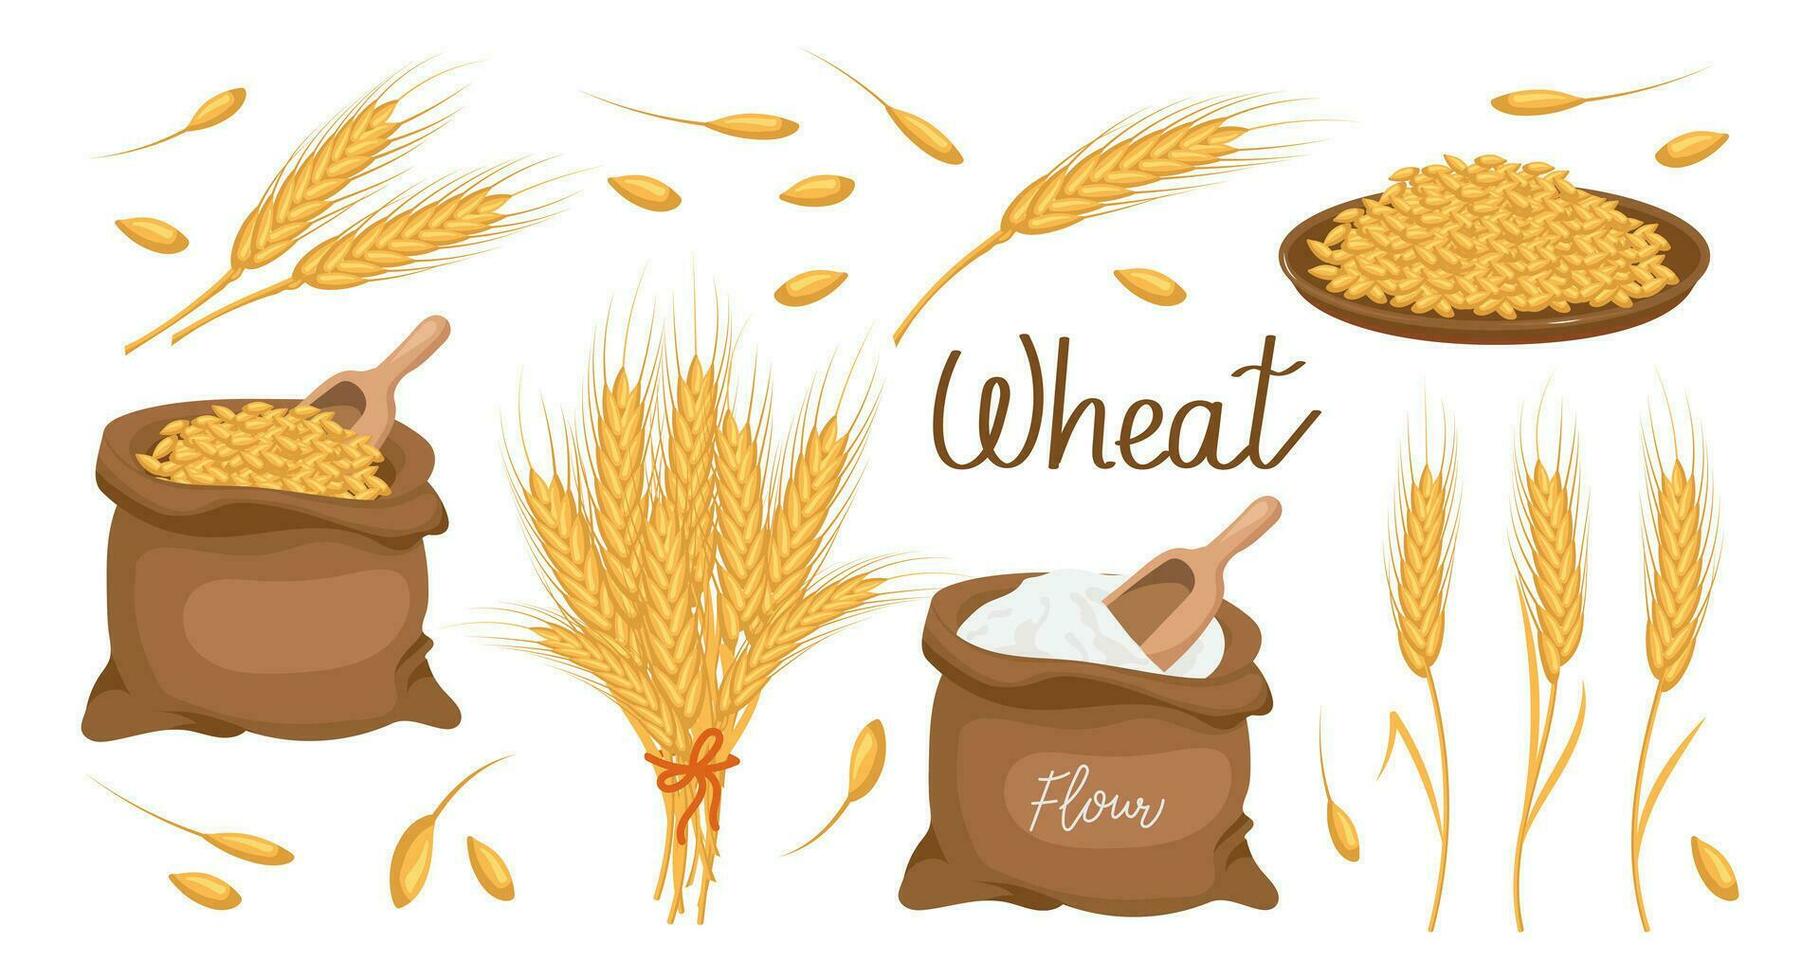 een reeks van granen en aartjes van tarwe. tarwe plant, tarwe granen in een bord, en een tas, tarwe meel. landbouw achtergrond, ontwerp elementen, vector